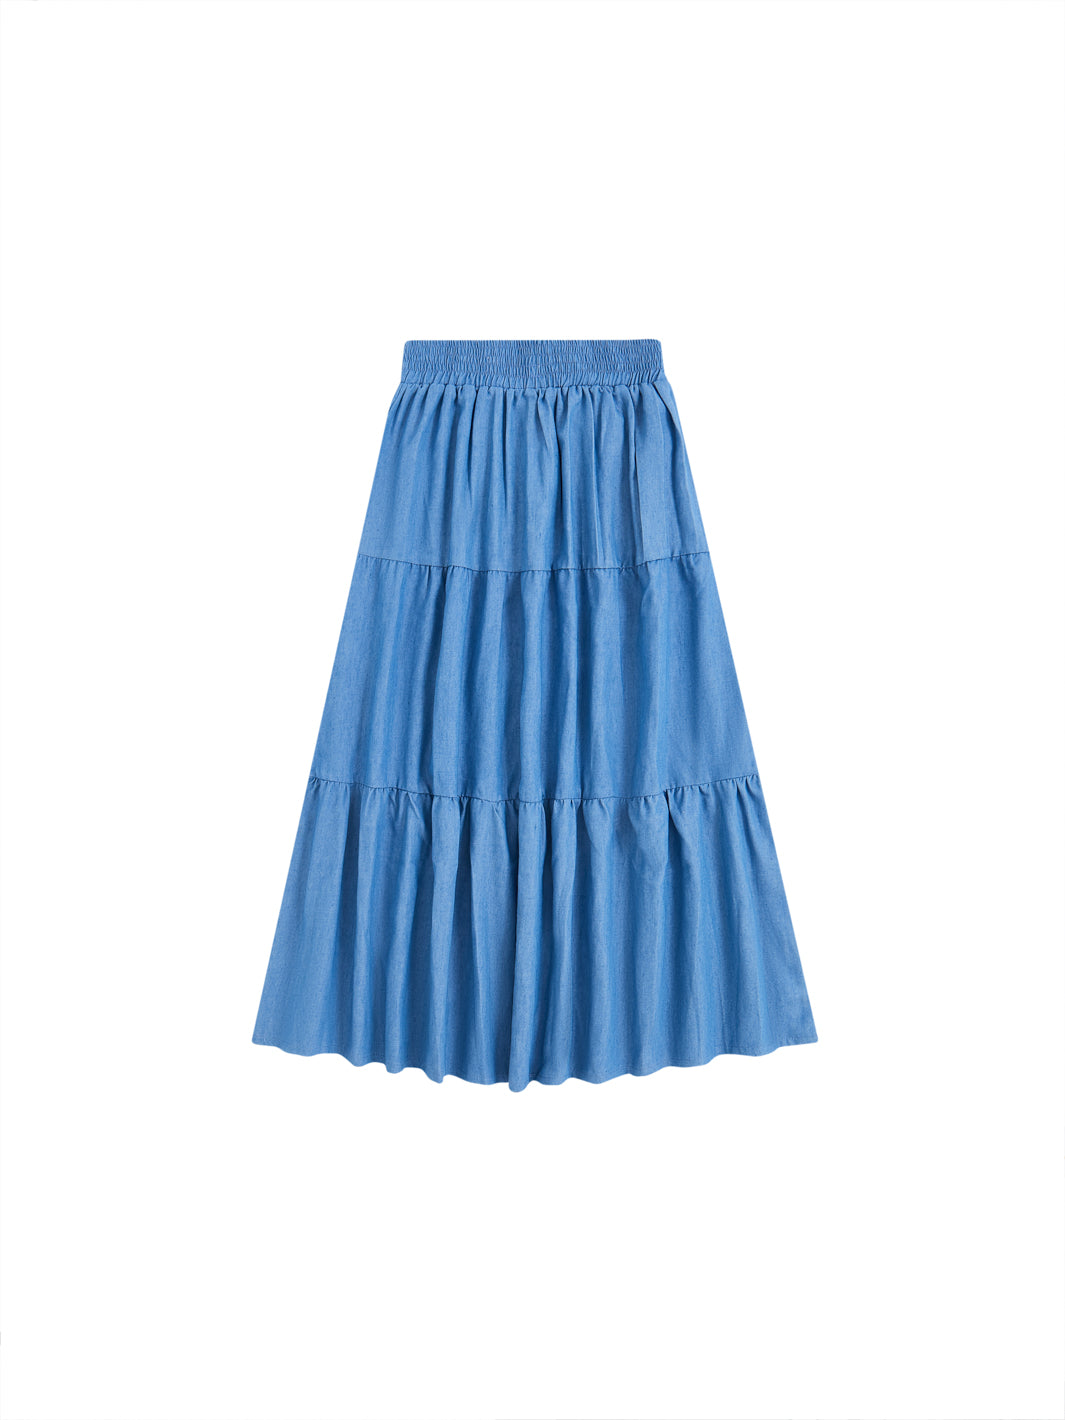 Denim Maxi Length Skirt - Lt. Blue